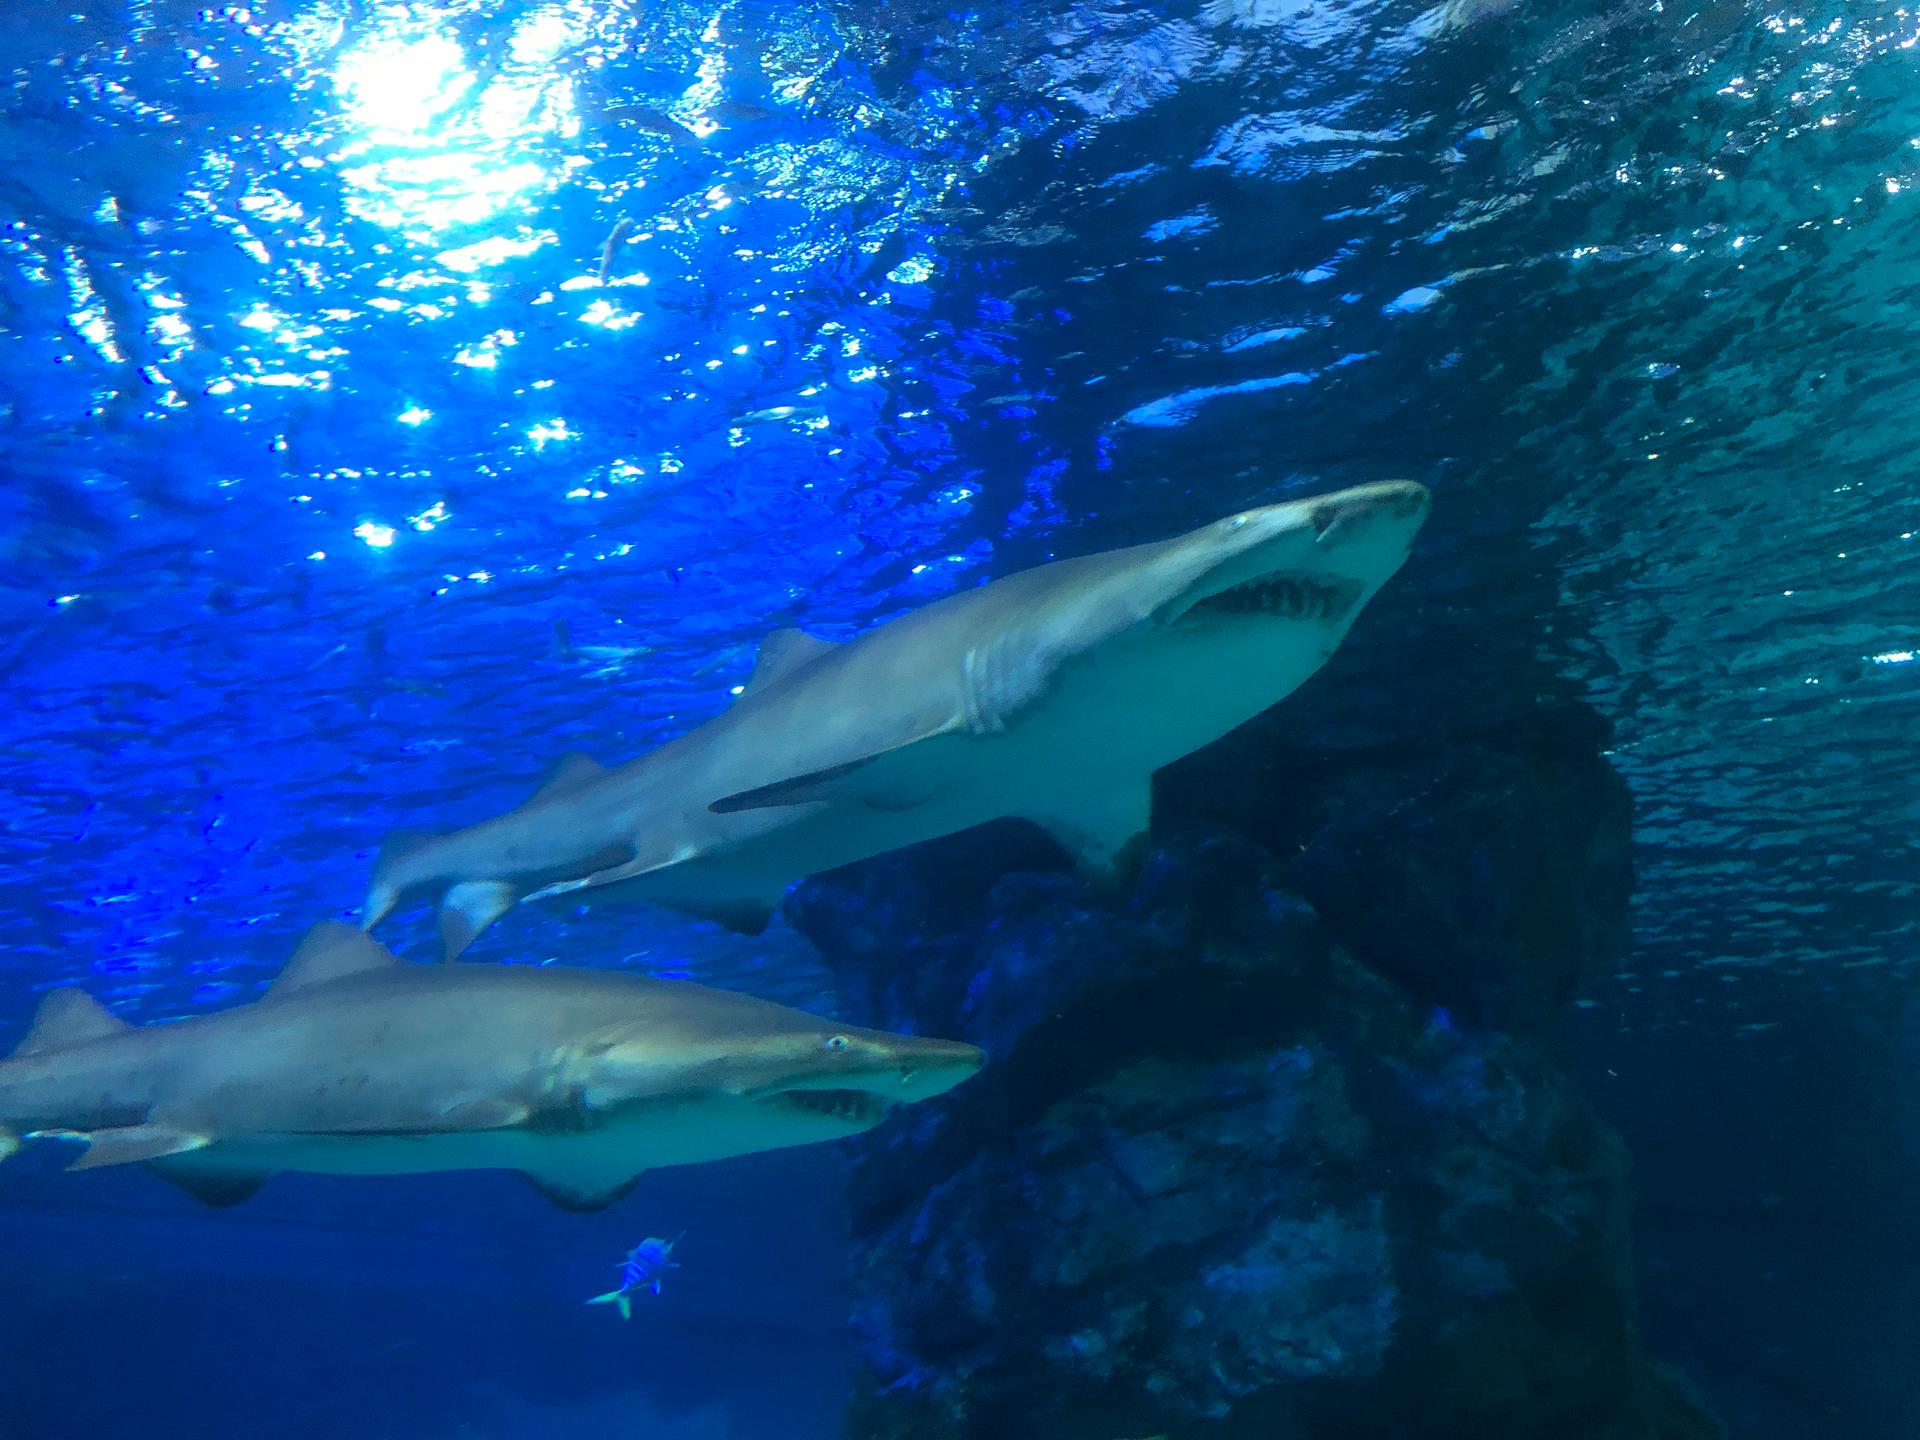 Blue requiem shark swimming in the azure water of Coex Aquarium, Korea.